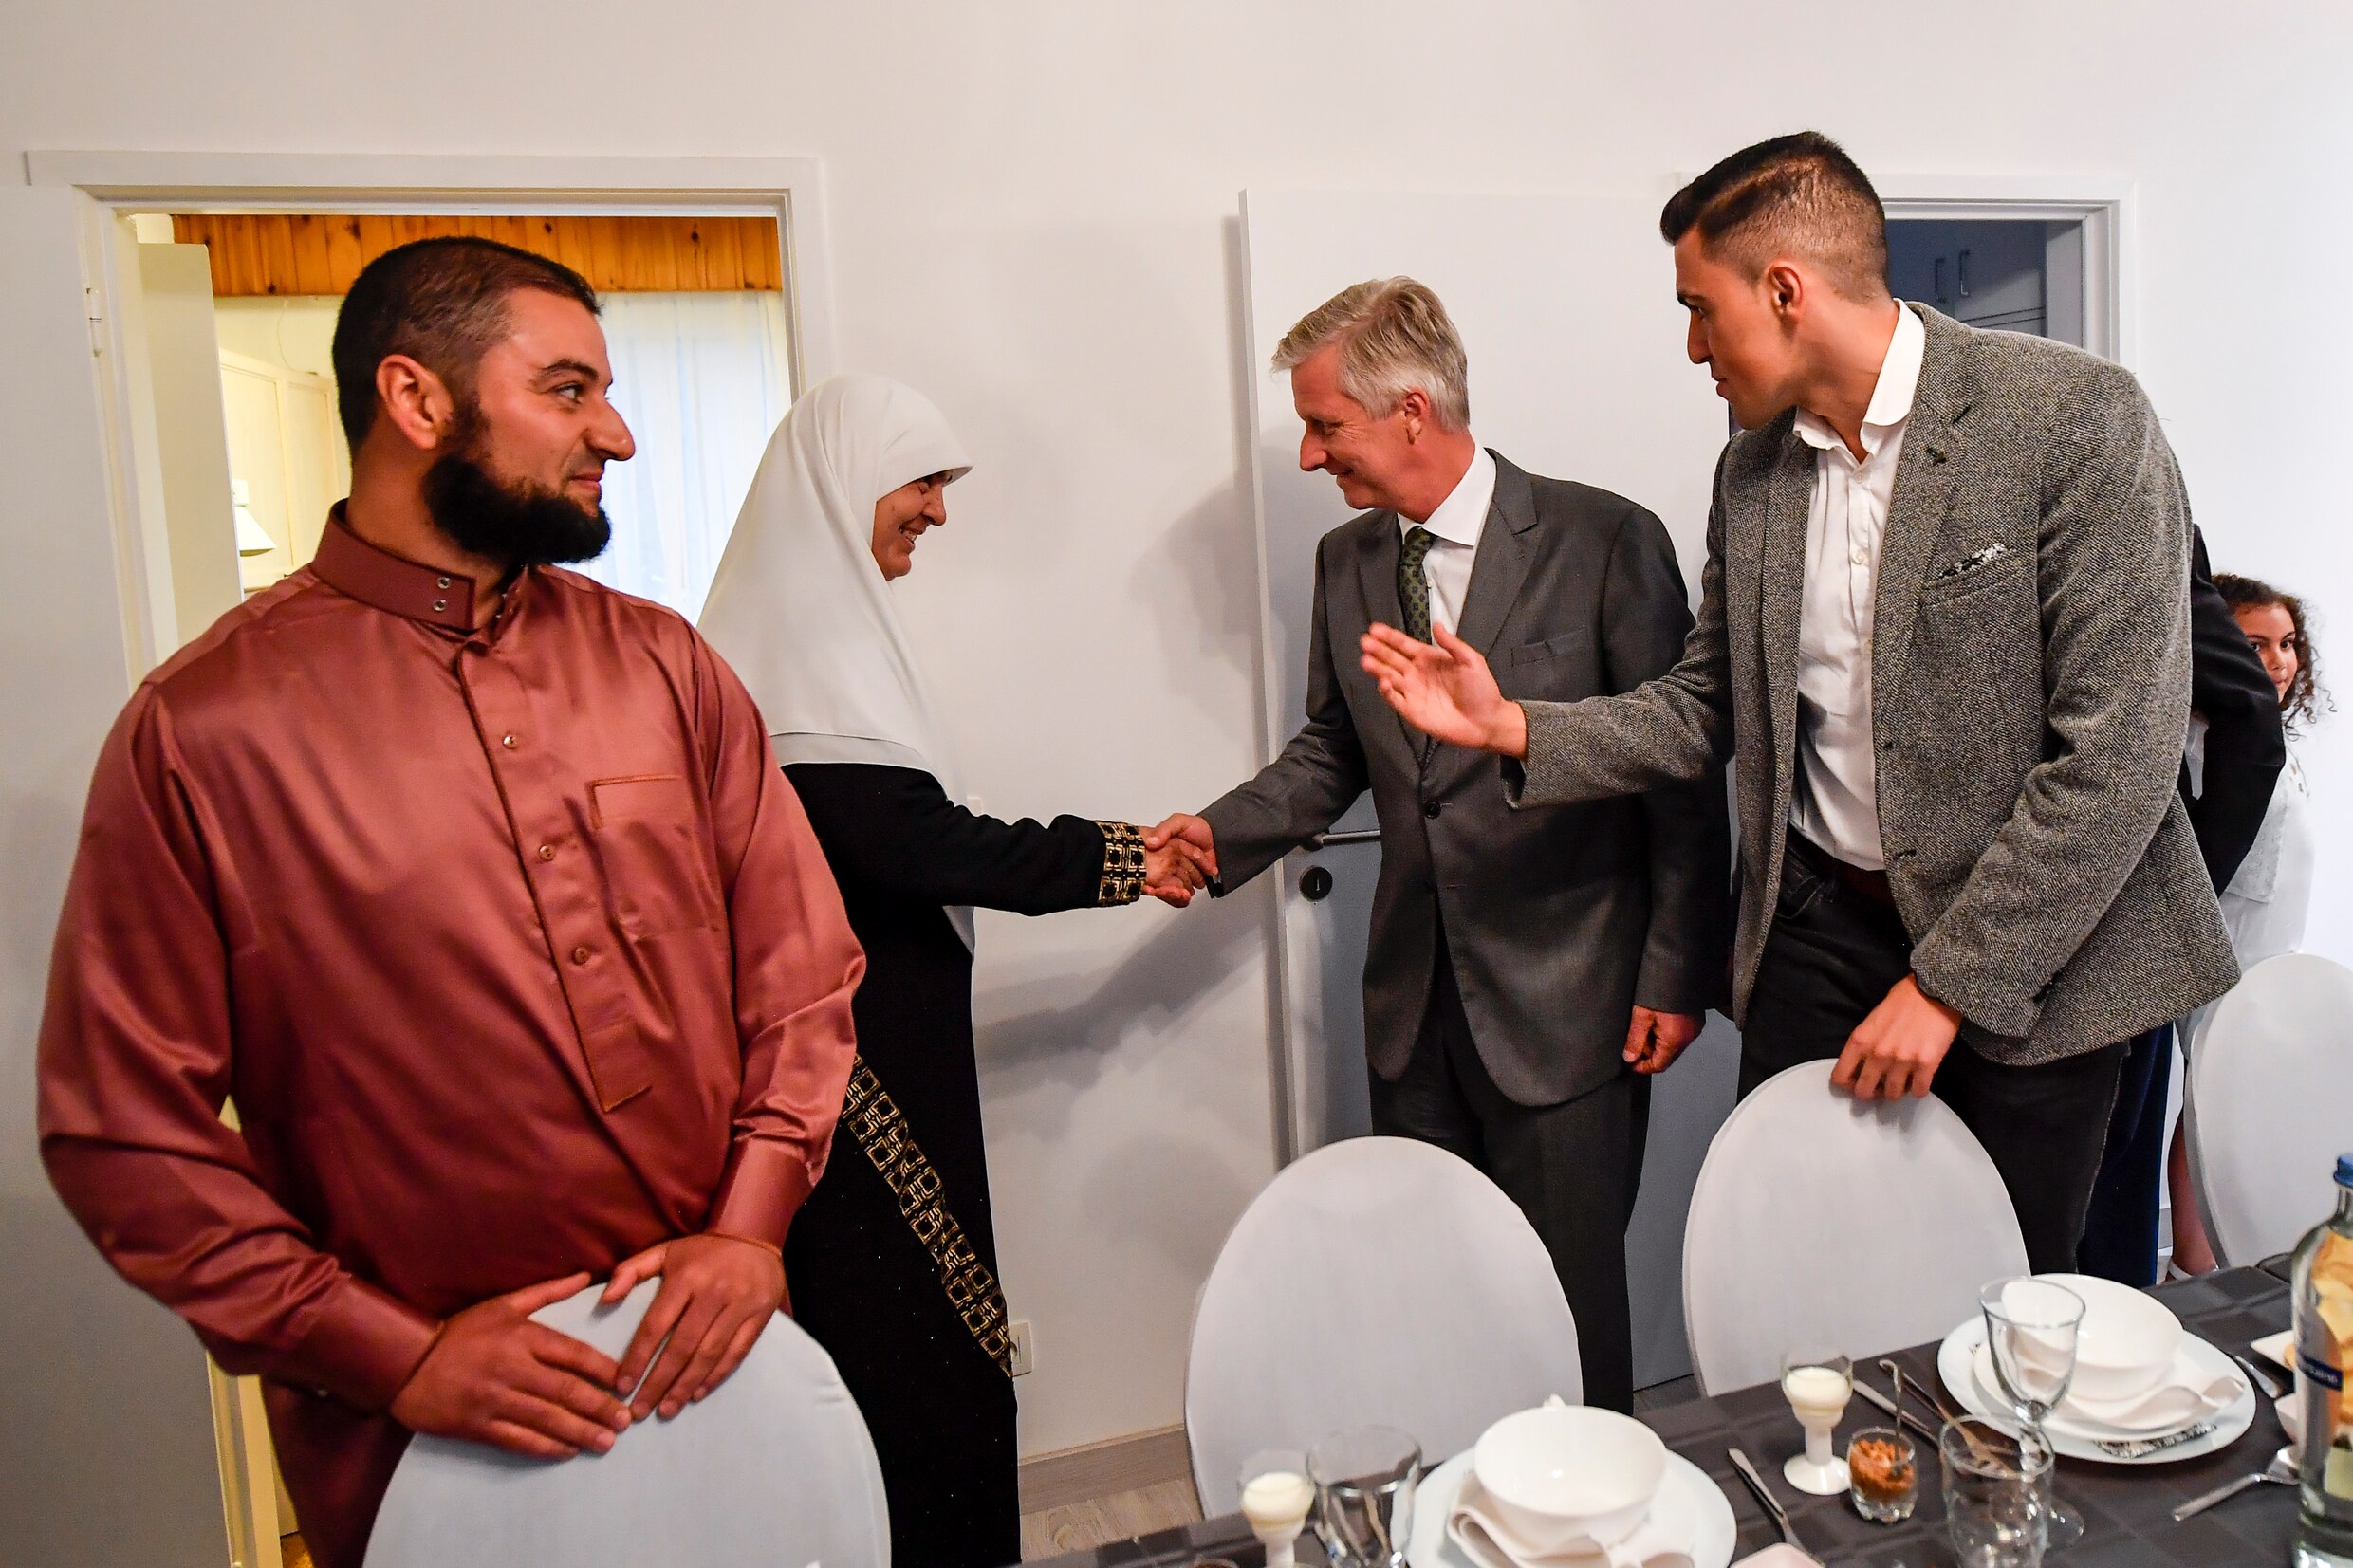 Koning bezoekt moslimfamilie voor iftar